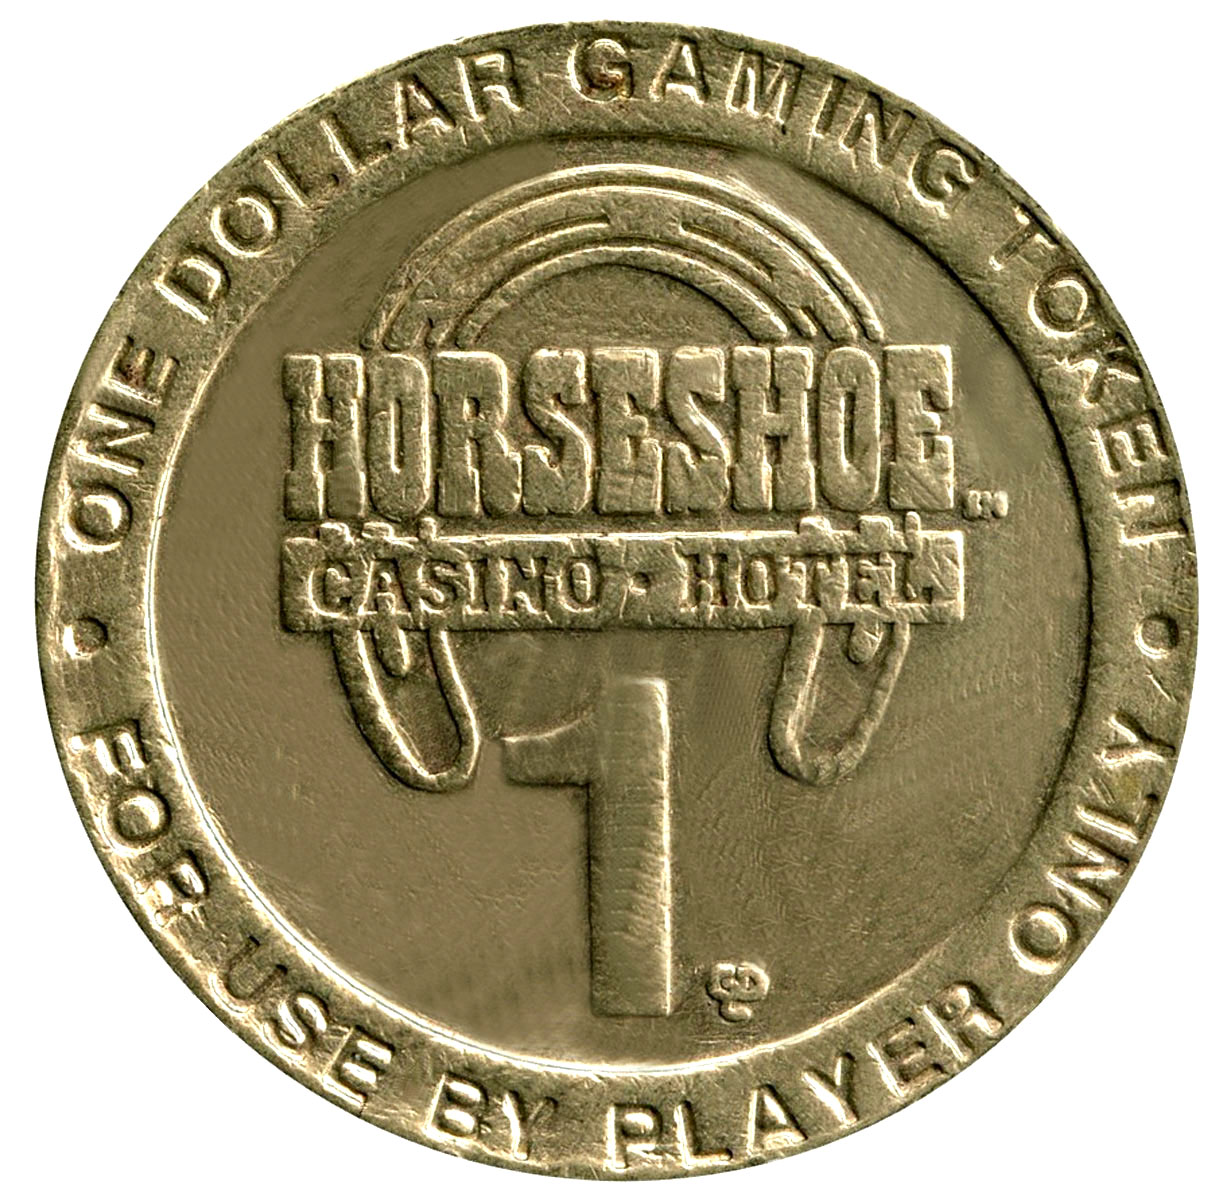 horseshoe casino poker tunica